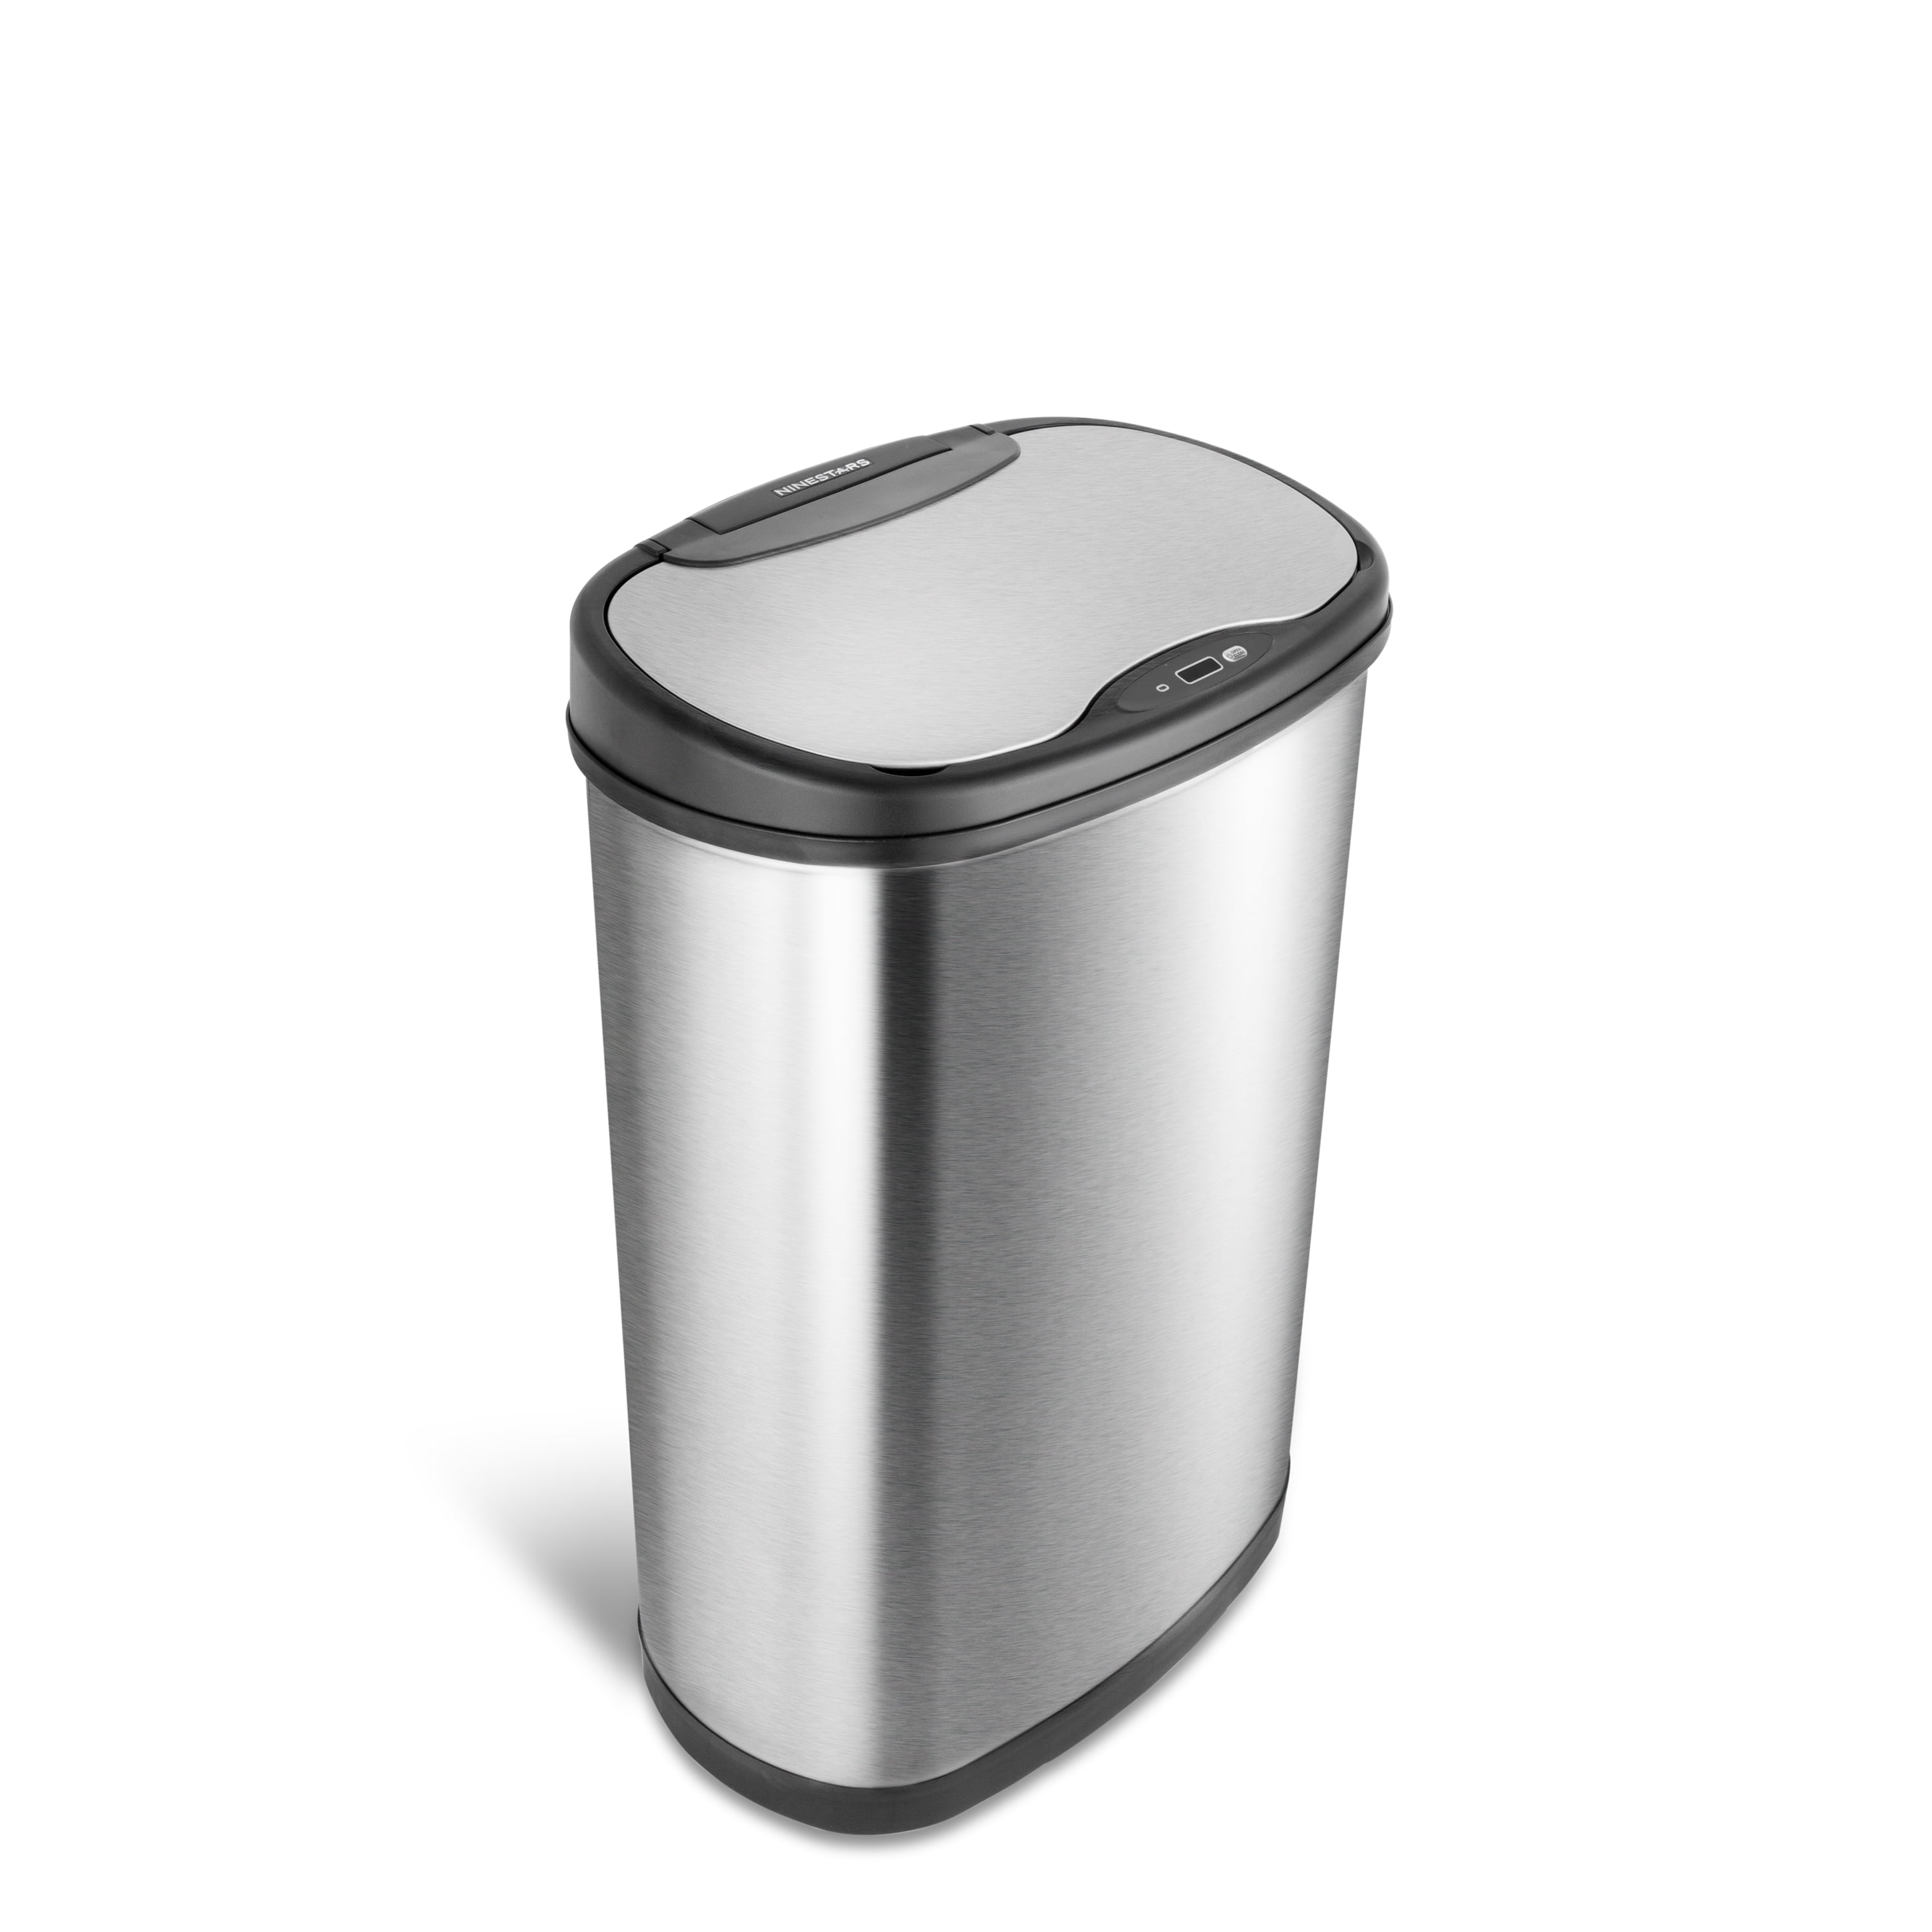 Motion Sensor Lid Opening Trash Can 13 Gal Stainless Steel Kitchen Garbage Bin 